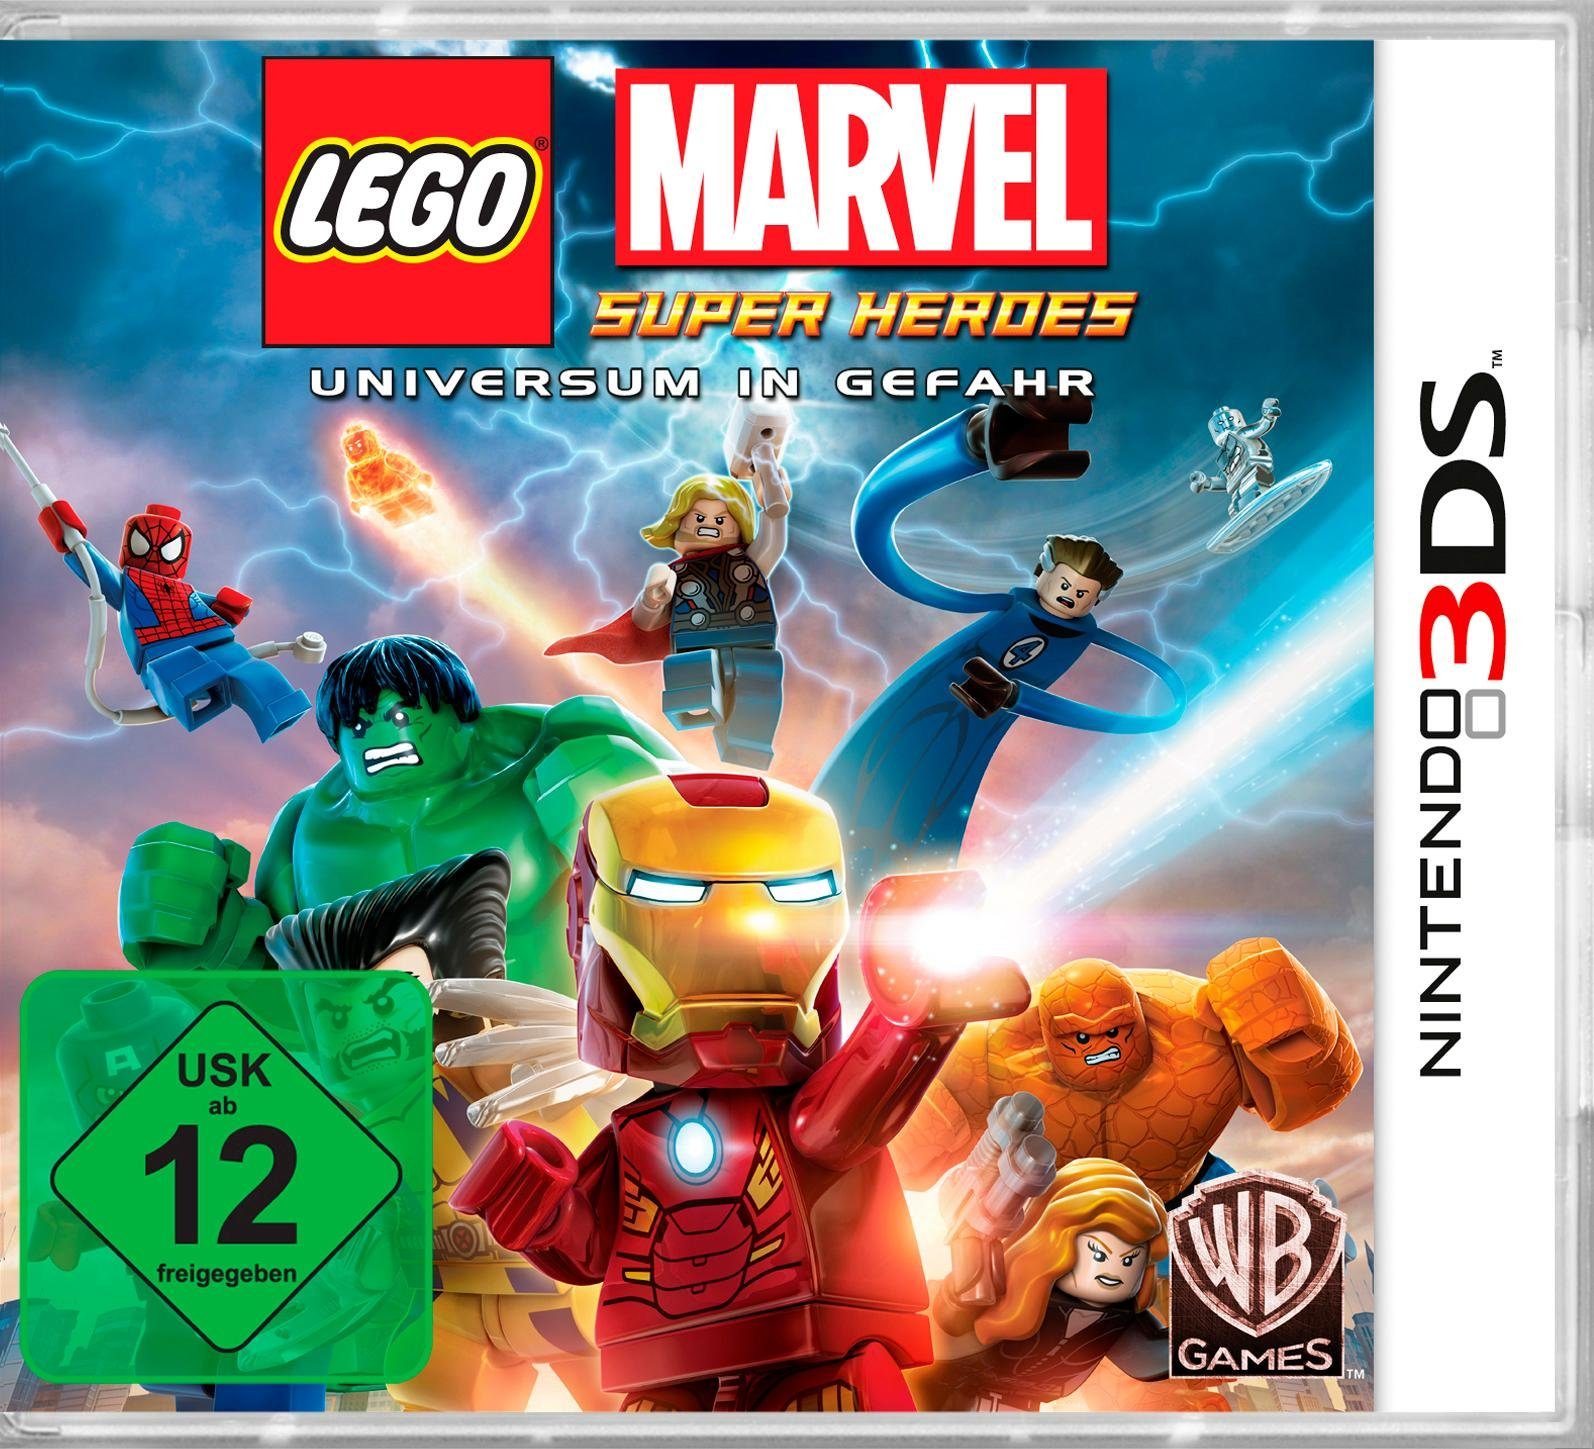 Lego Marvel Software Warner 3DS, Heroes Games Pyramide Nintendo Super